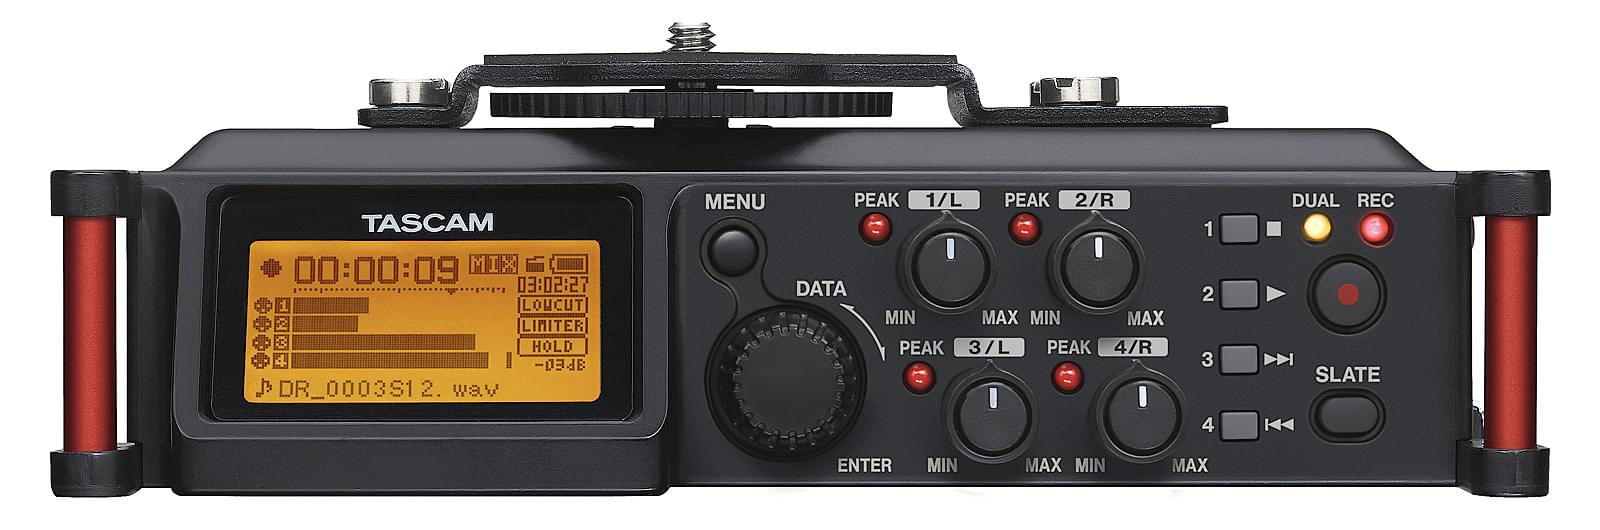 4-channel audio recorder for DSLR cameras | Tascam DR-70D